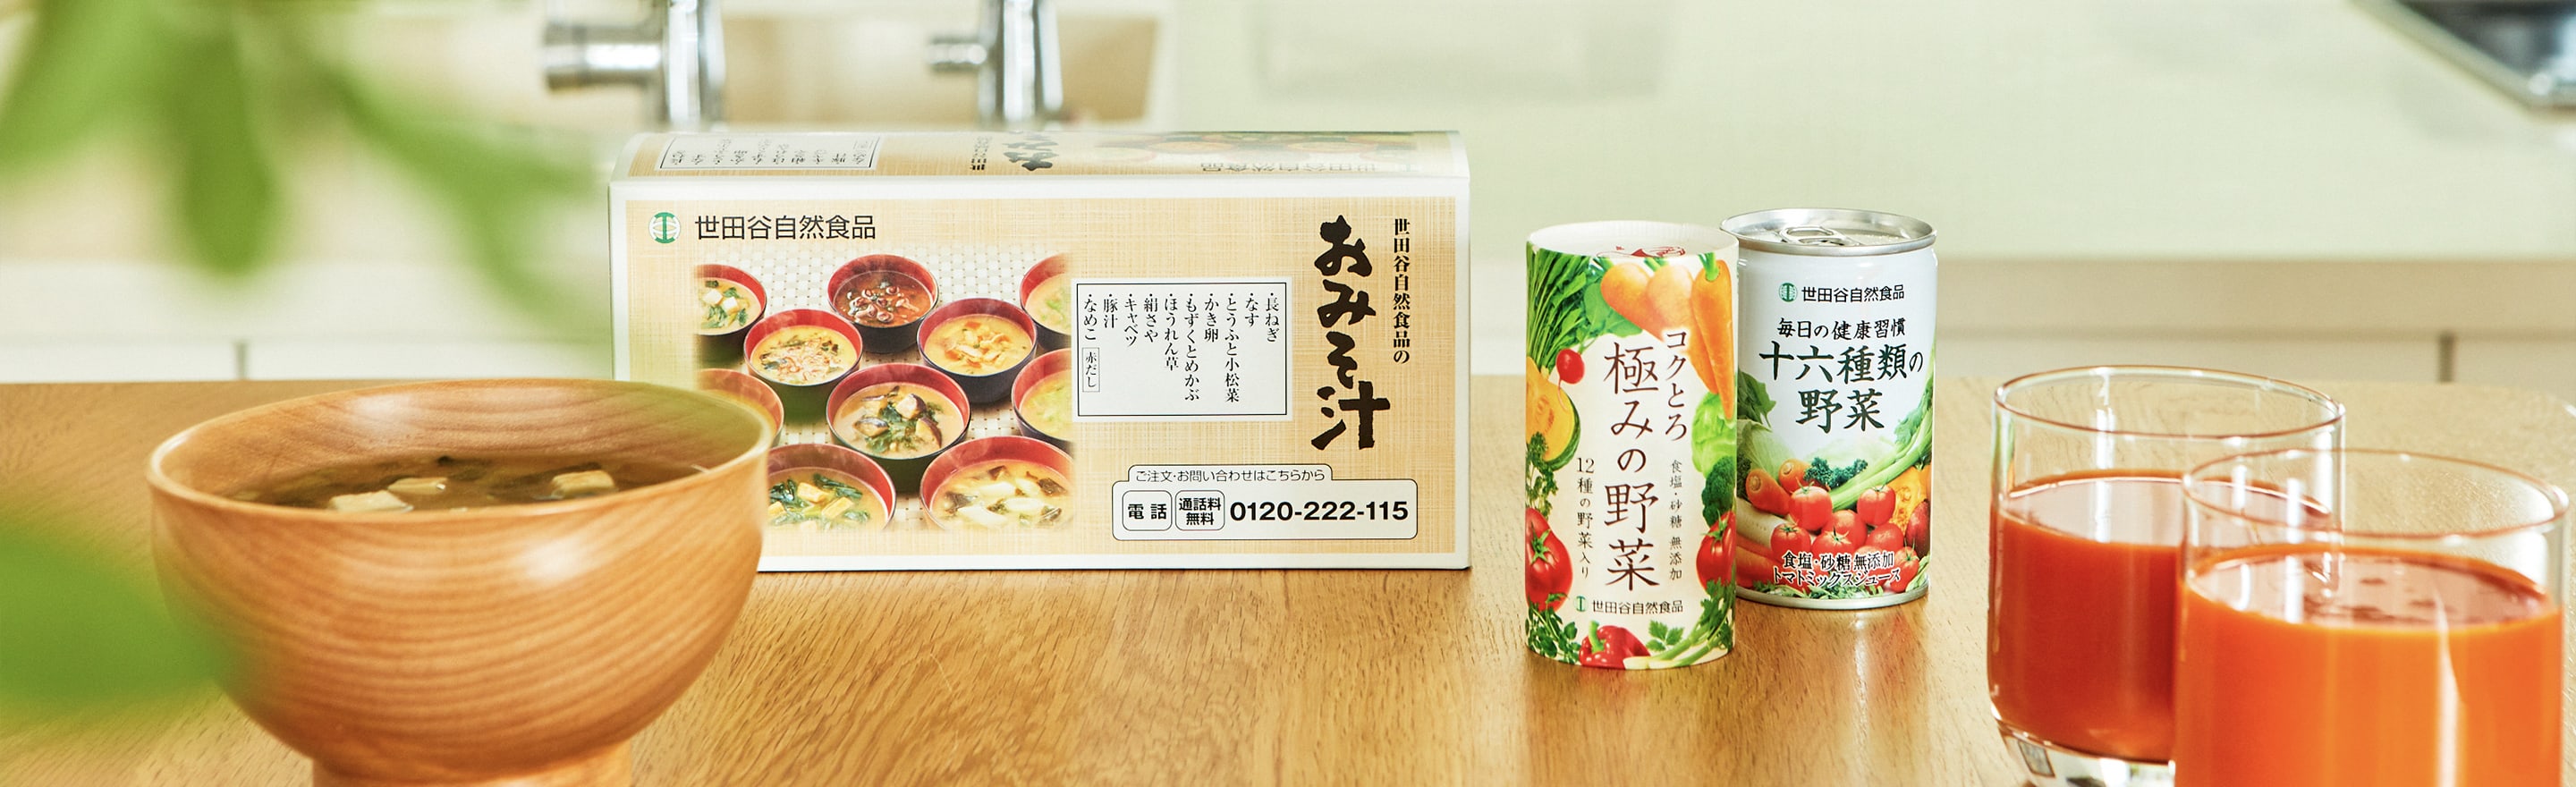 世田谷自然食品のおみそ汁と野菜ジュースの商品が並んでいる写真